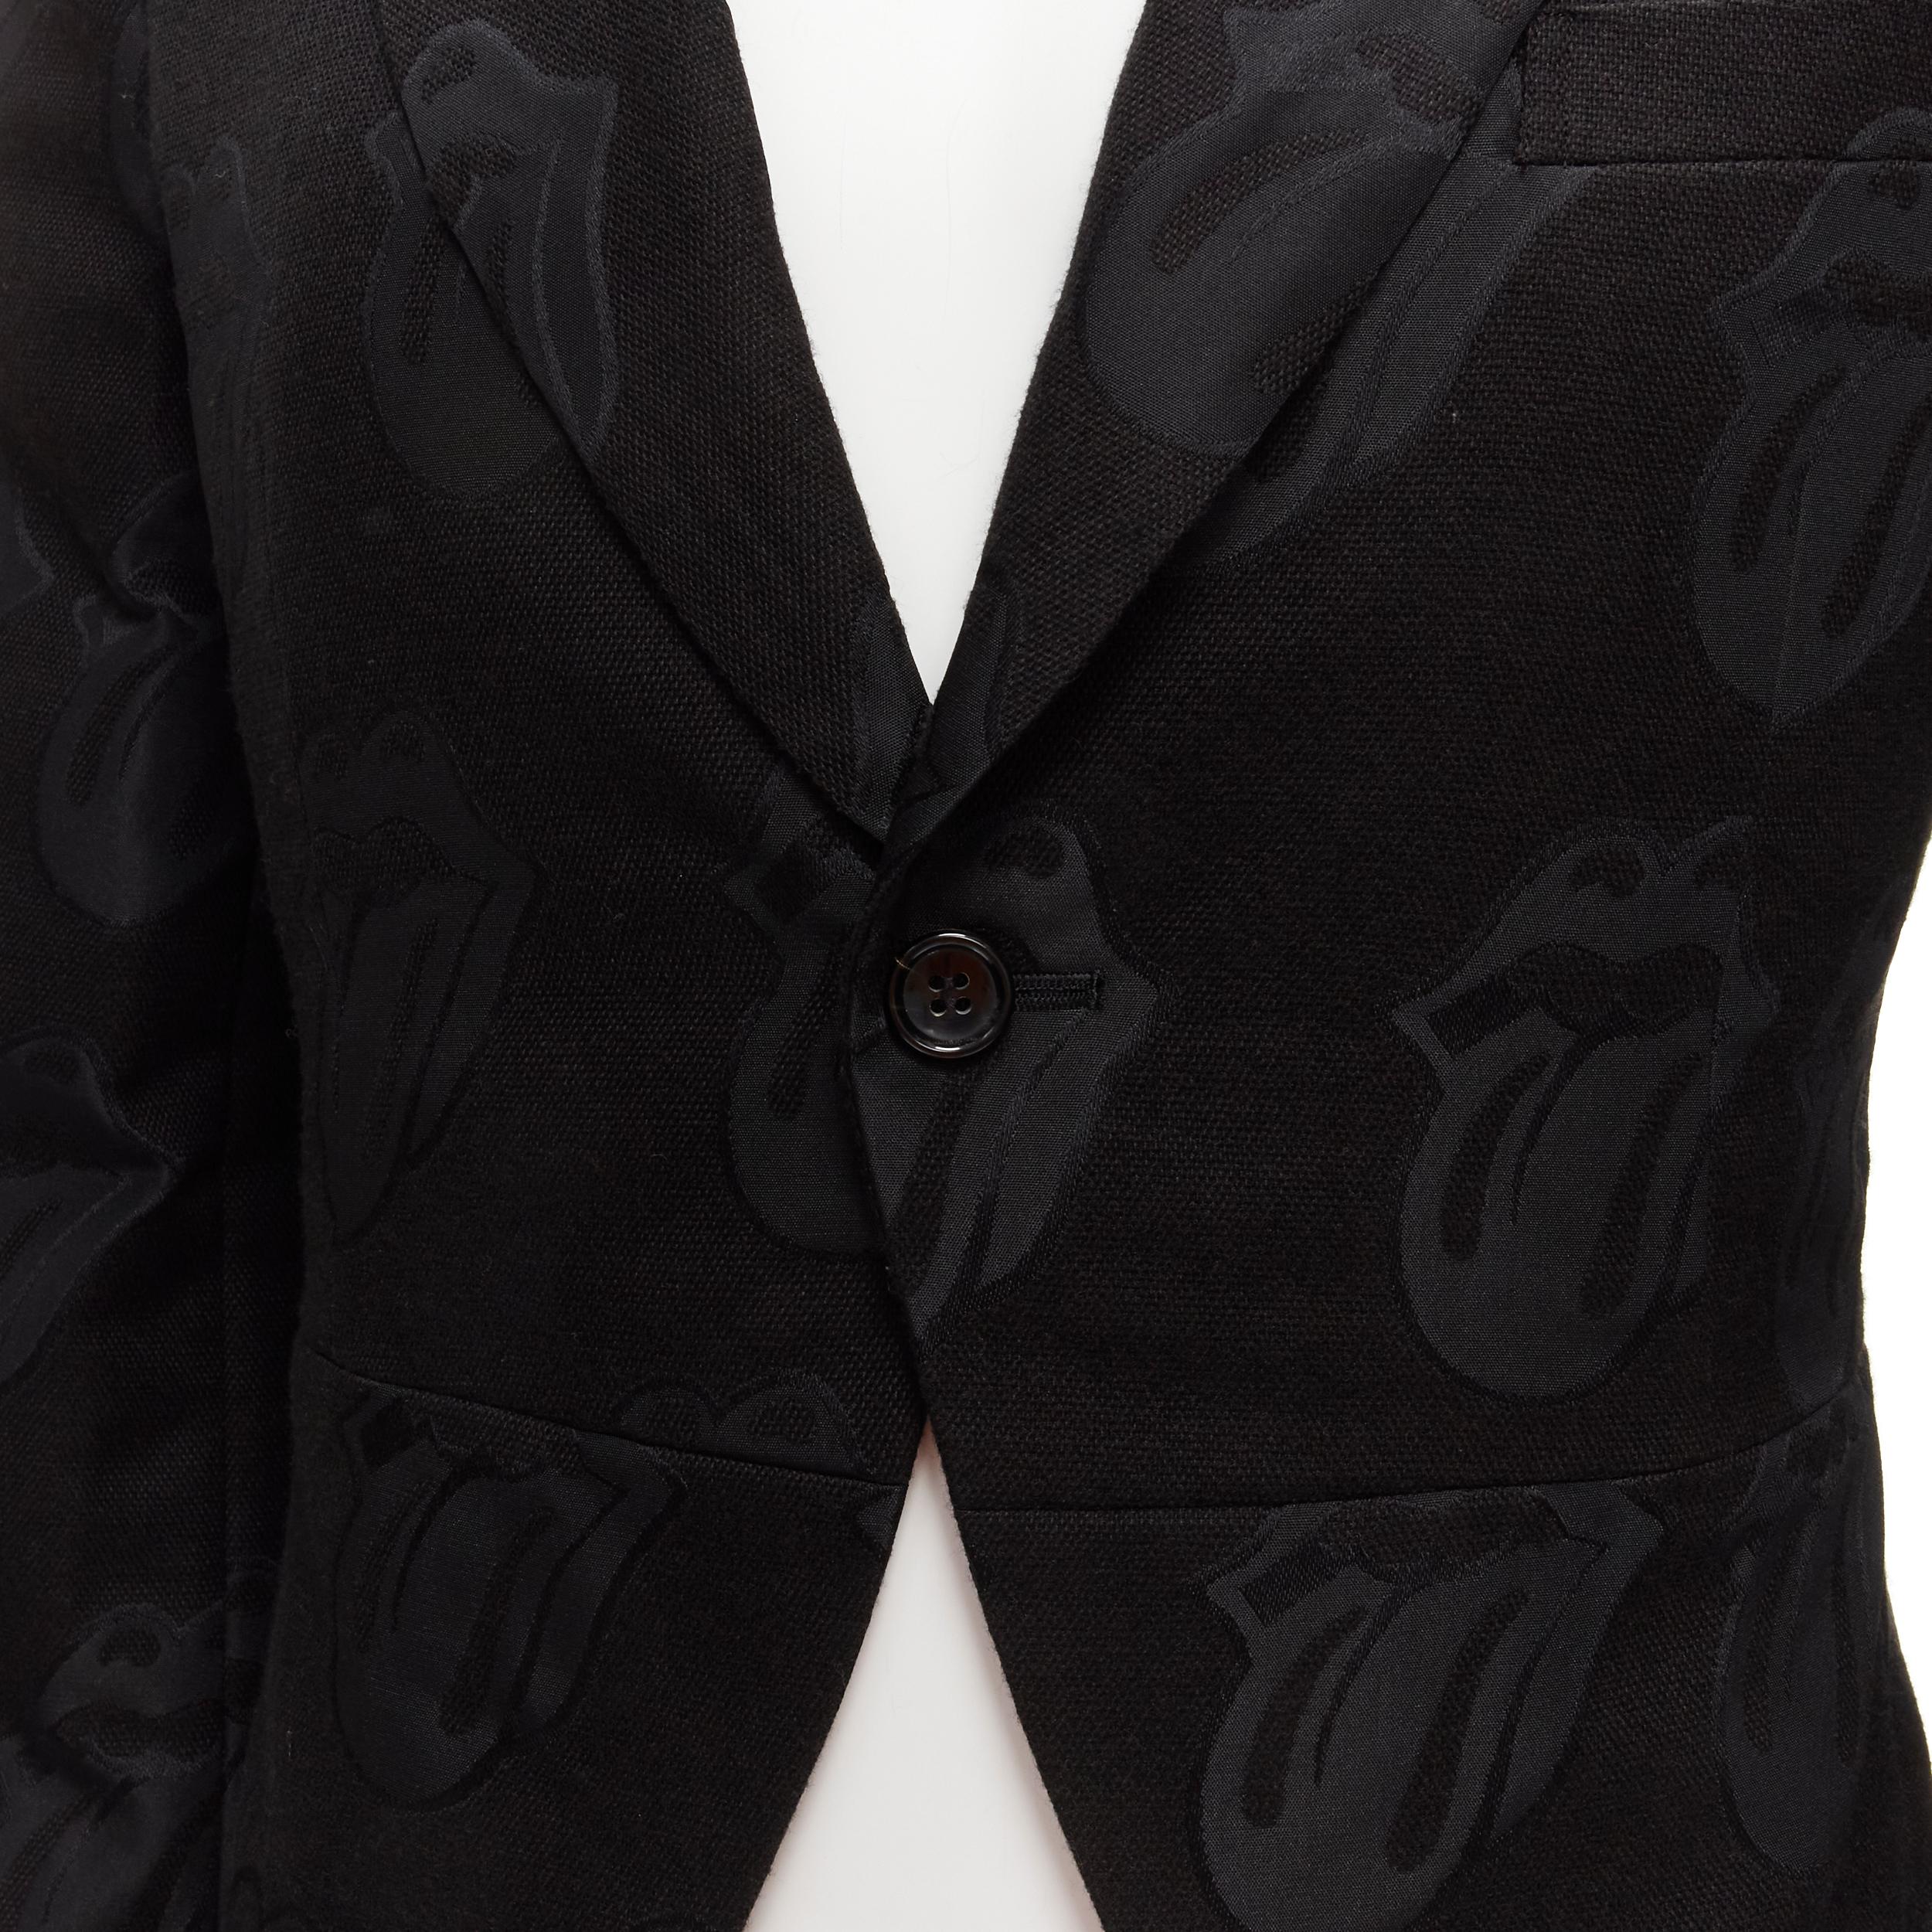 COMME DES GARCONS HOMME PLUS 2005 Rolling Stone jacquard black tailcoat blazer M For Sale 3